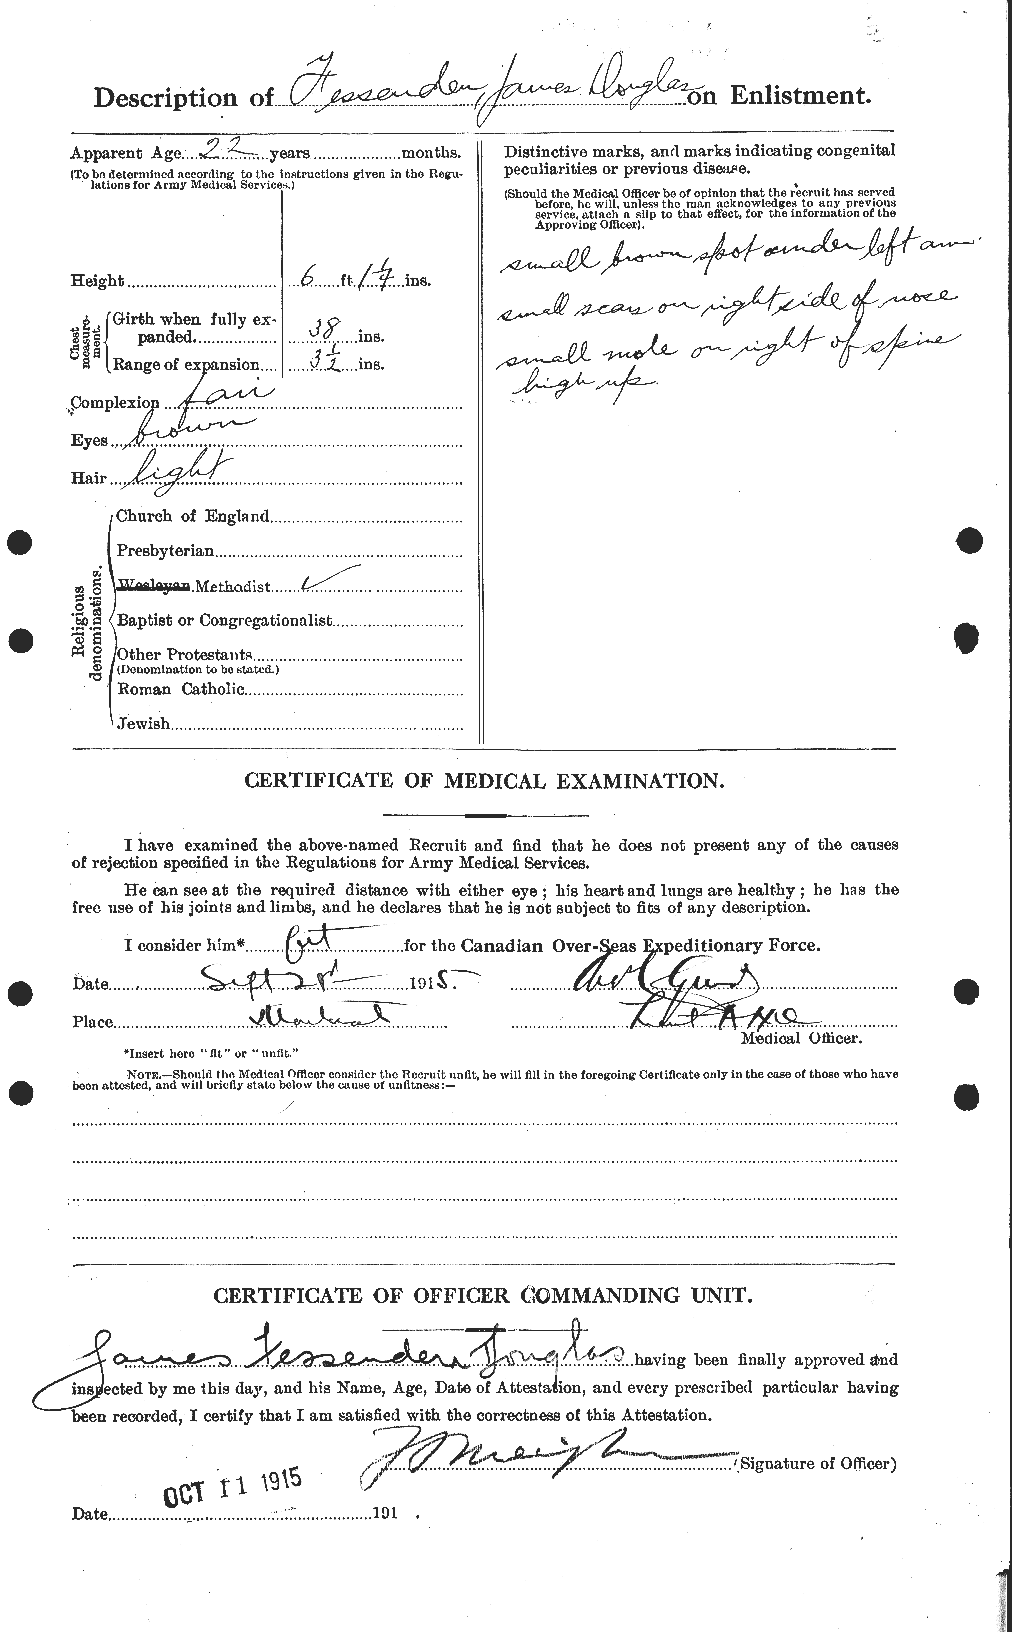 Dossiers du Personnel de la Première Guerre mondiale - CEC 325840b